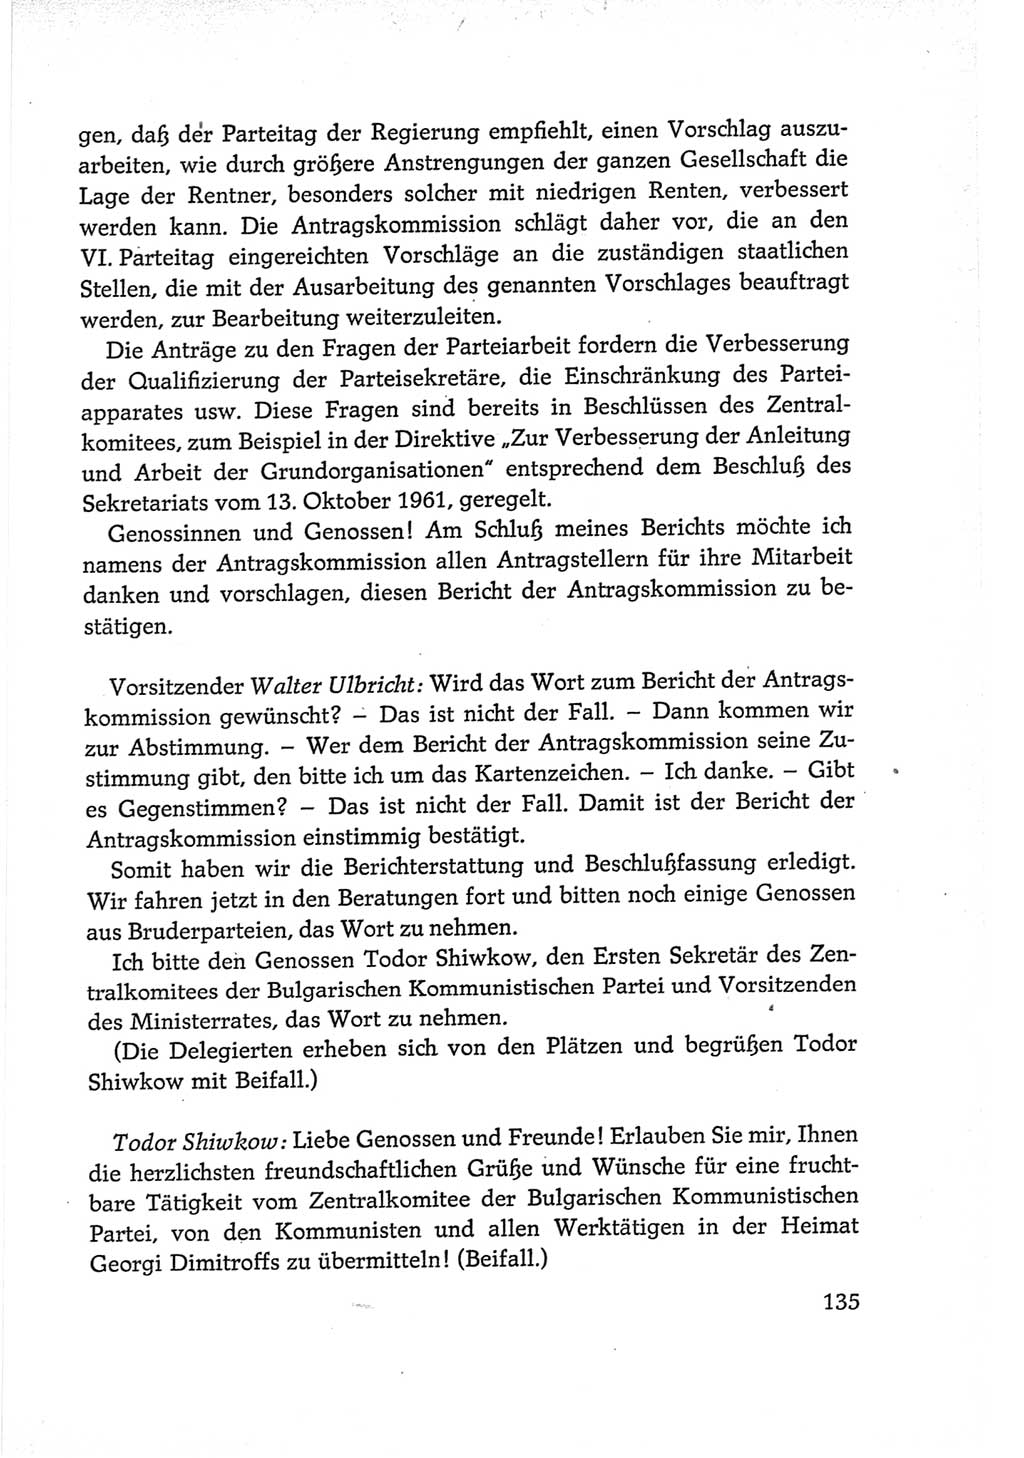 Protokoll der Verhandlungen des Ⅵ. Parteitages der Sozialistischen Einheitspartei Deutschlands (SED) [Deutsche Demokratische Republik (DDR)] 1963, Band Ⅱ, Seite 135 (Prot. Verh. Ⅵ. PT SED DDR 1963, Bd. Ⅱ, S. 135)